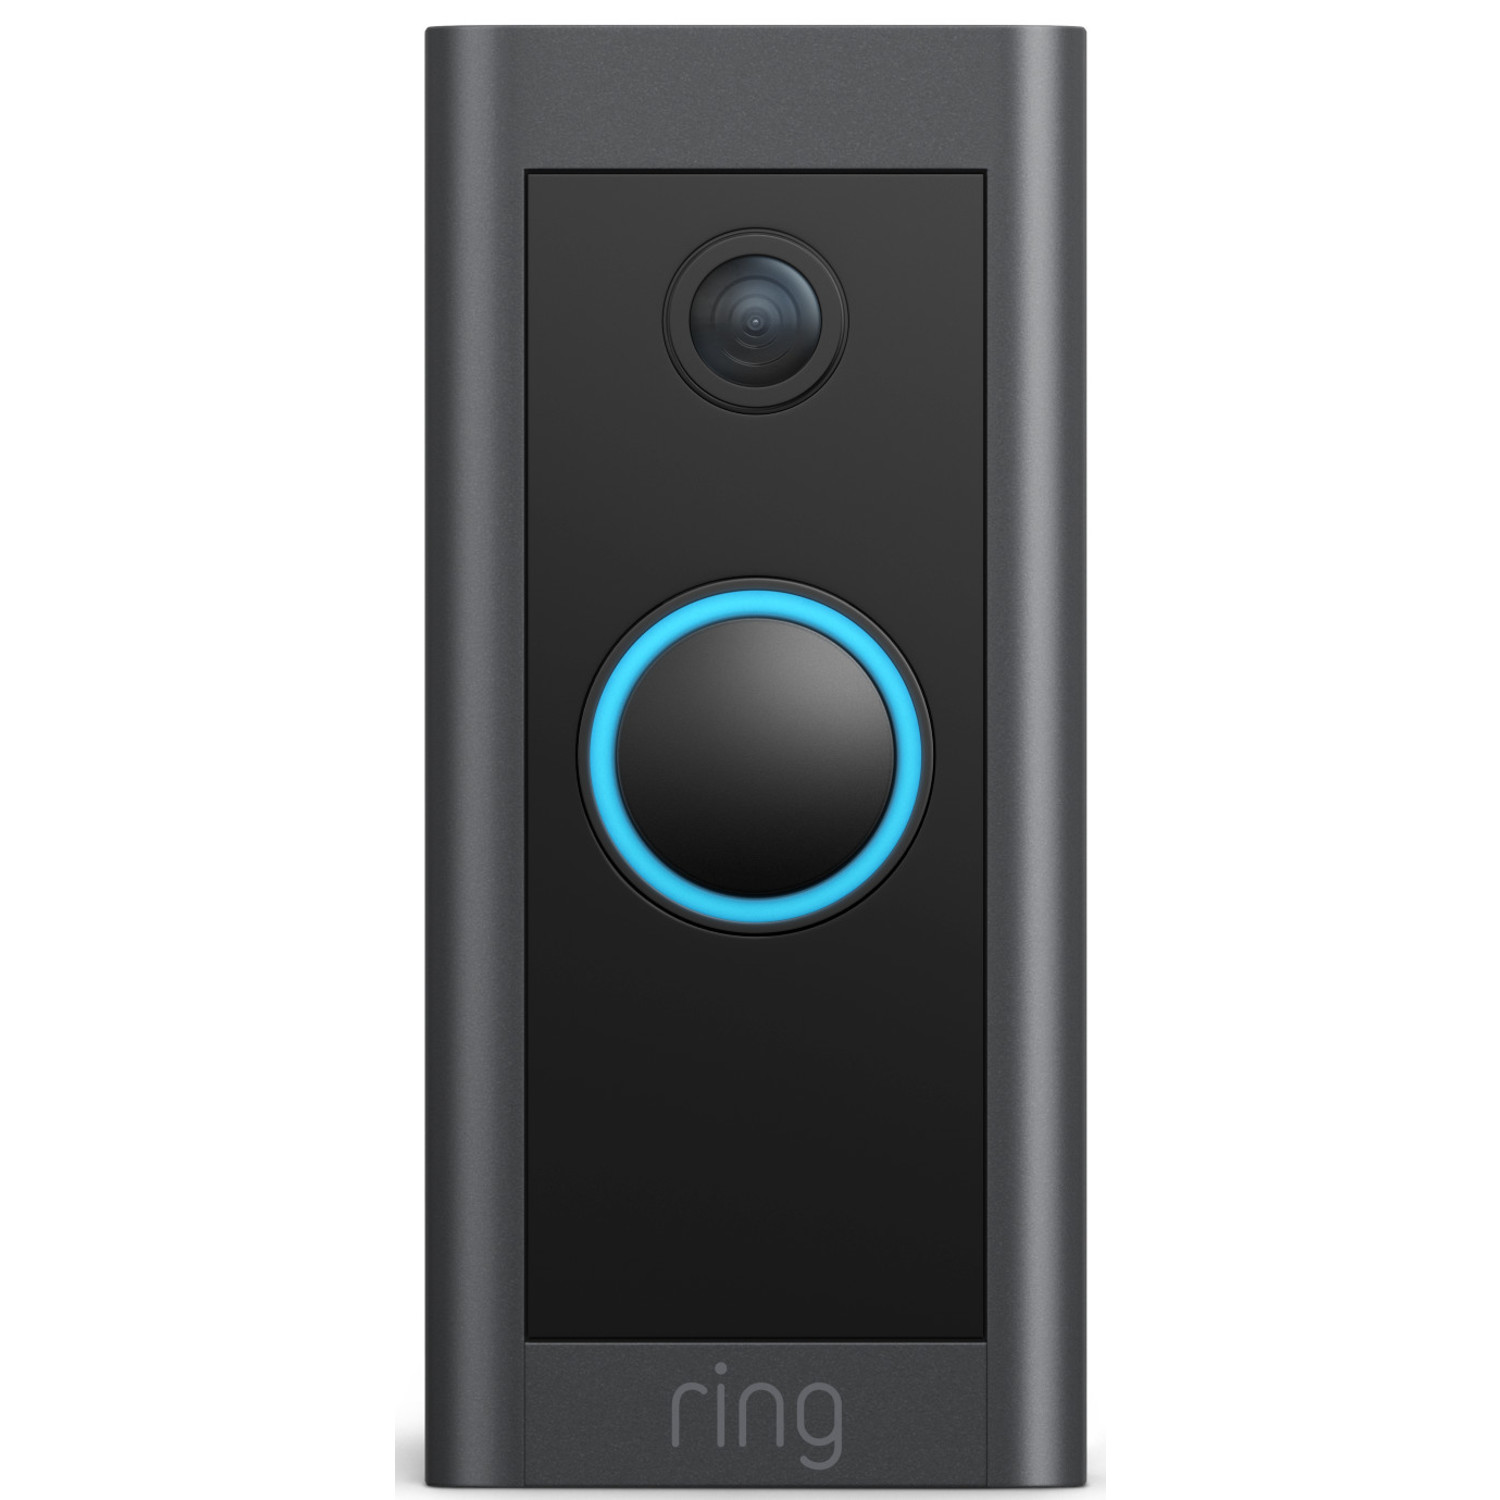 aankunnen Installatie Religieus Ring Video Doorbell Wired - Deurbel - BoXXer